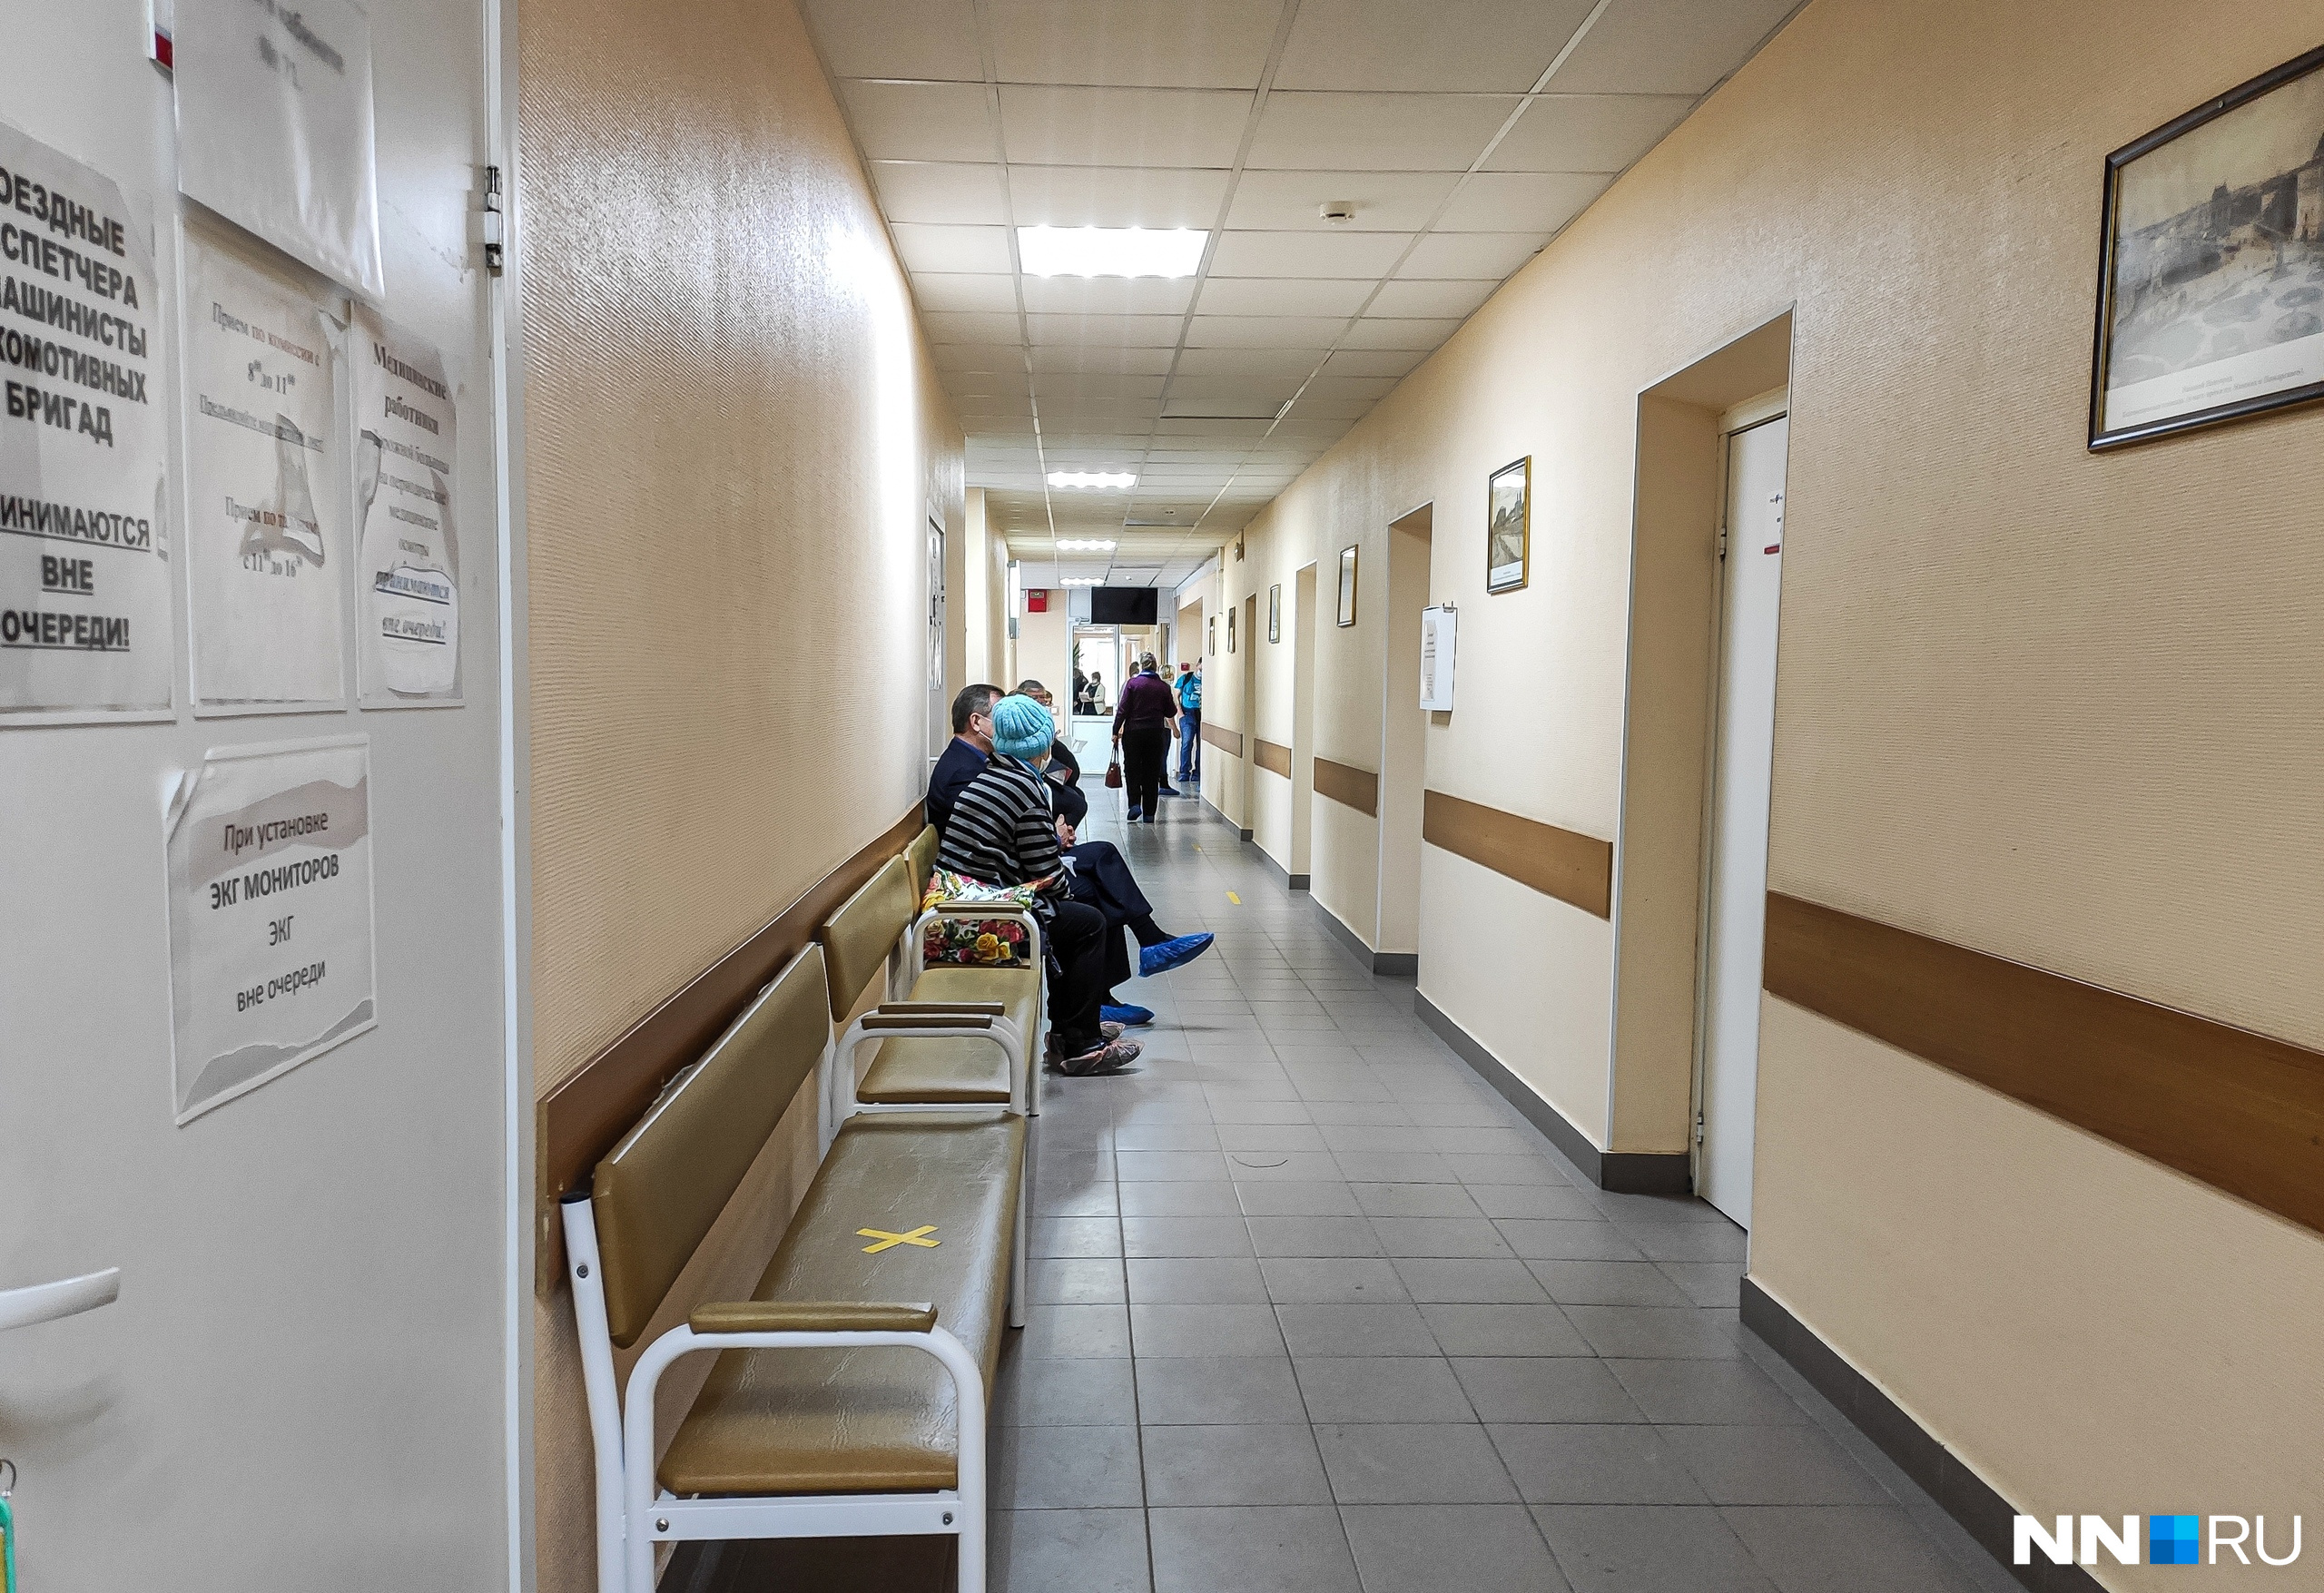 Нижегородской области на 230 млн рублей уменьшат субсидию на модернизацию поликлиник и ФАПов. Деньги направят в новые регионы РФ